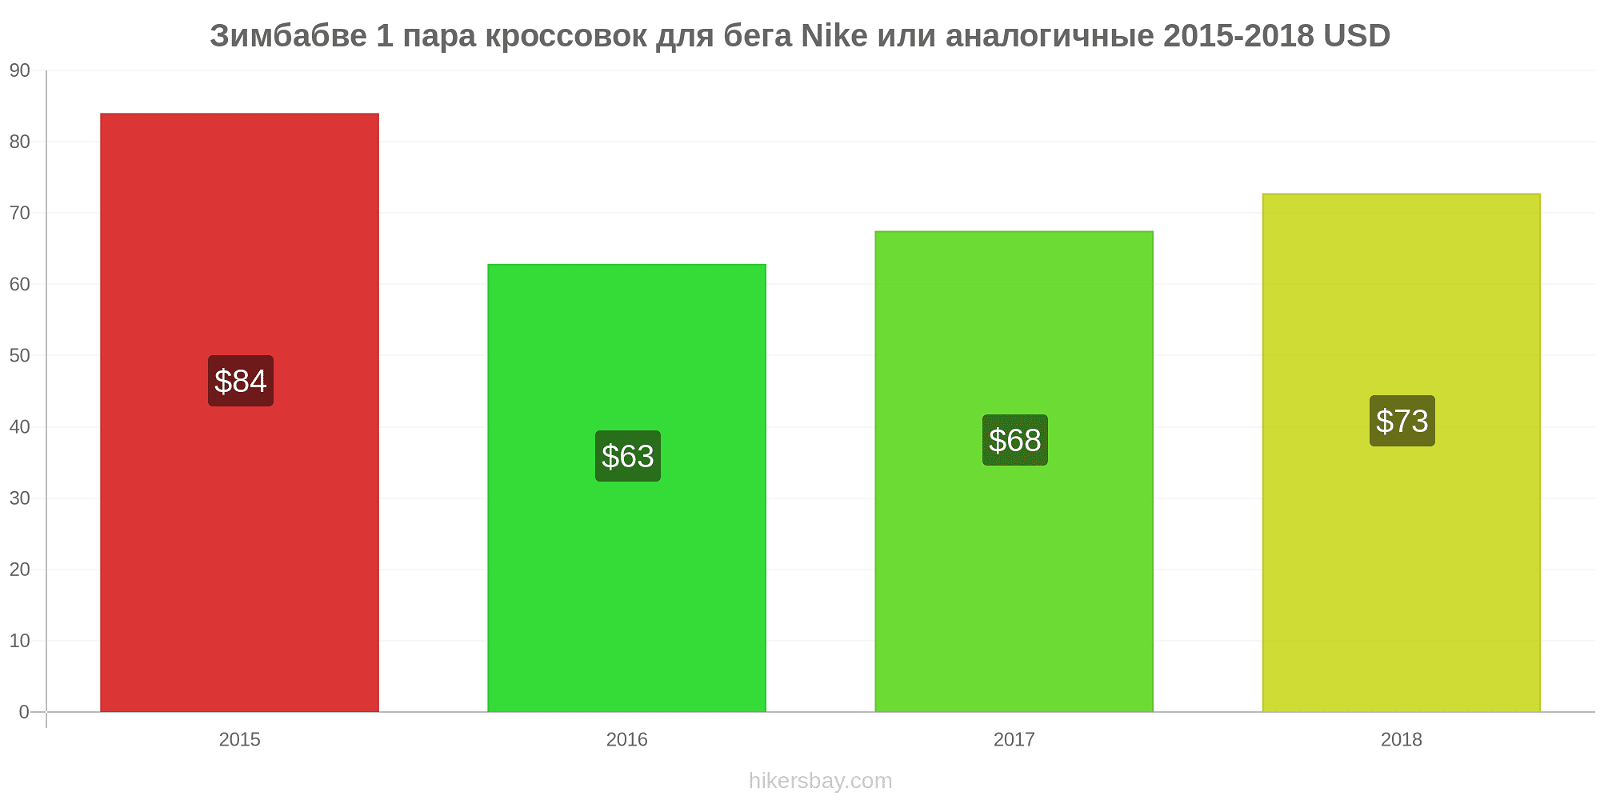 Зимбабве изменения цен 1 пара кроссовок для бега Nike или аналогичные hikersbay.com